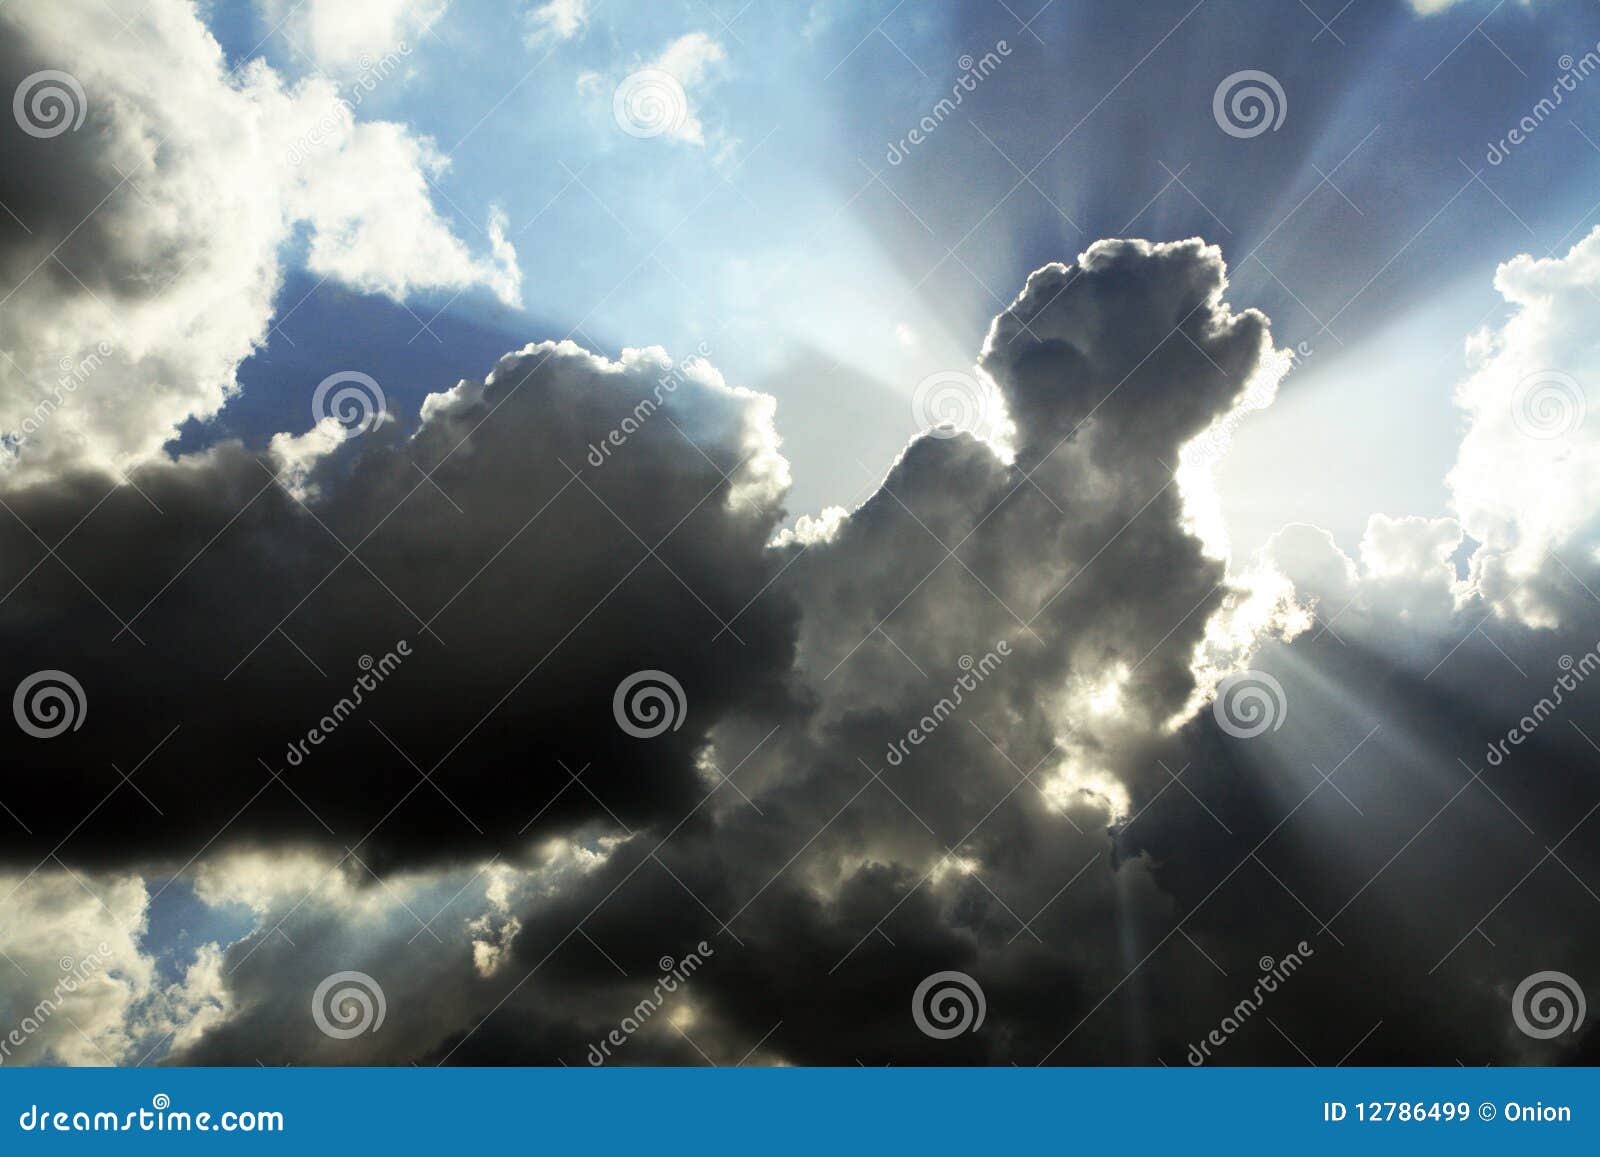 cloudy sky with sunrays